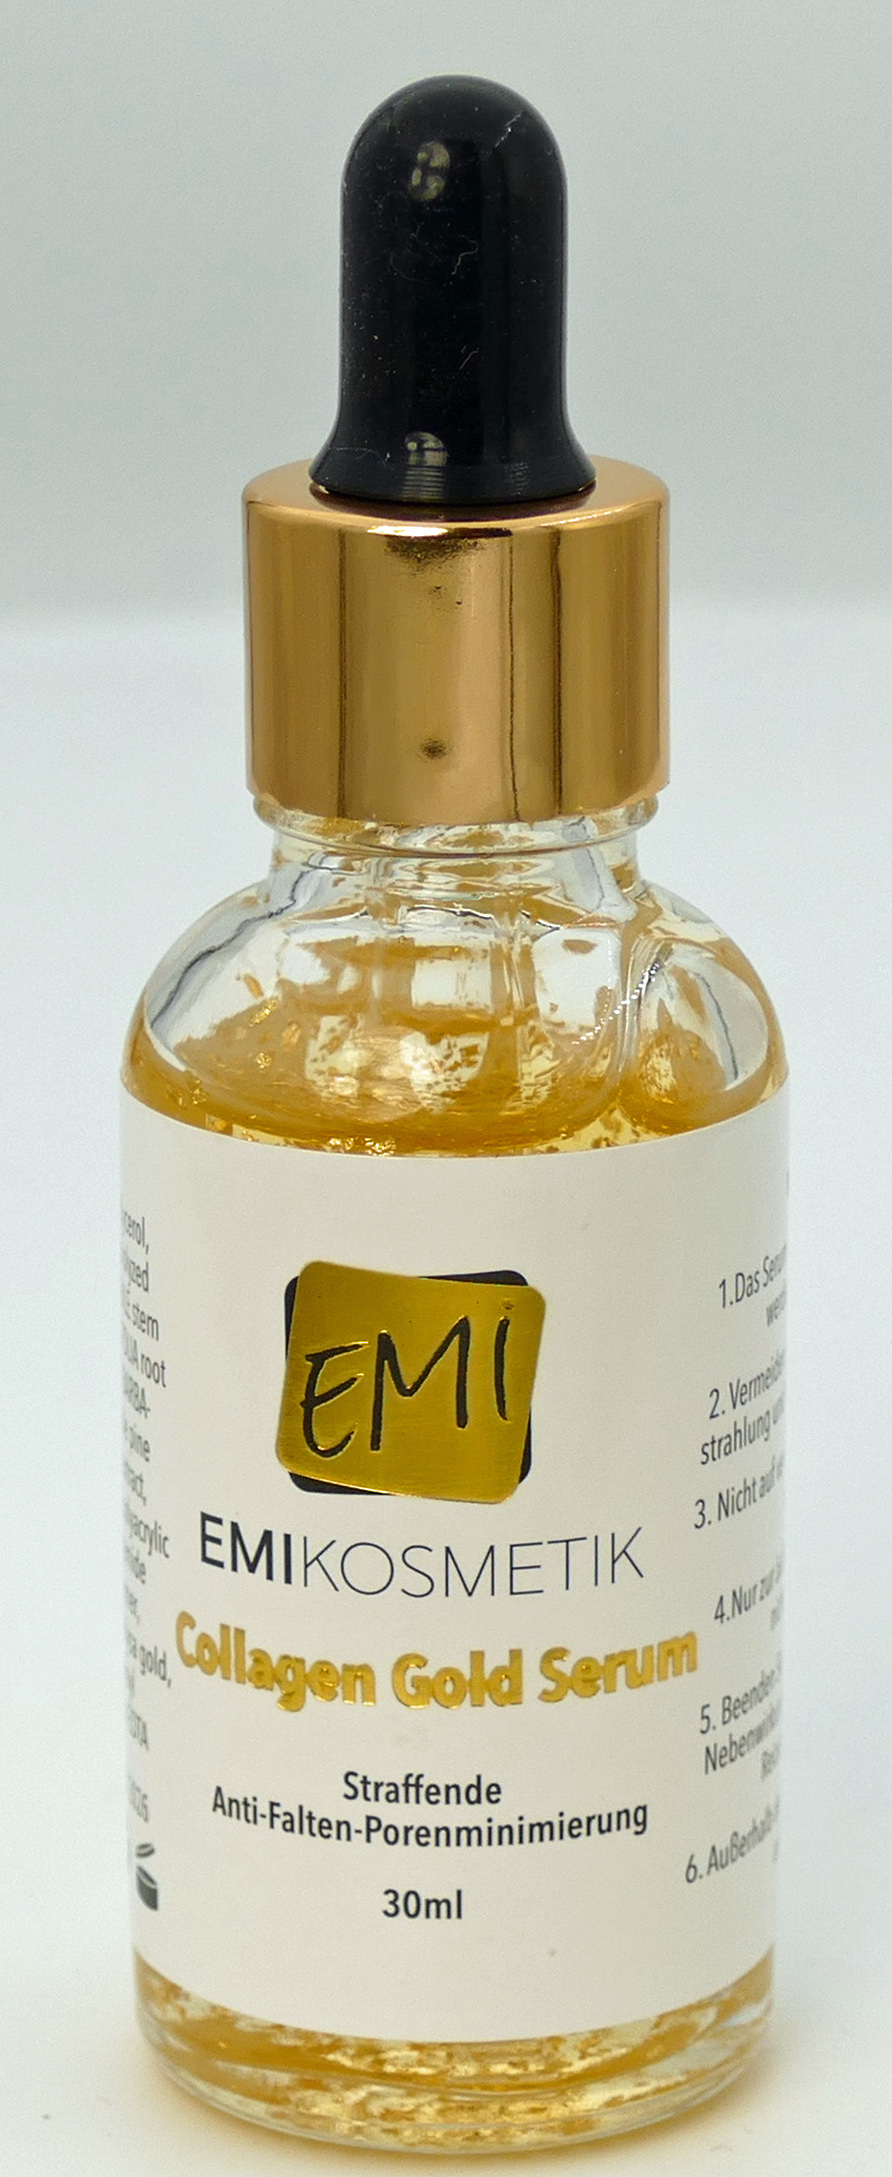 EMI Collagen Gold Serum 30ml